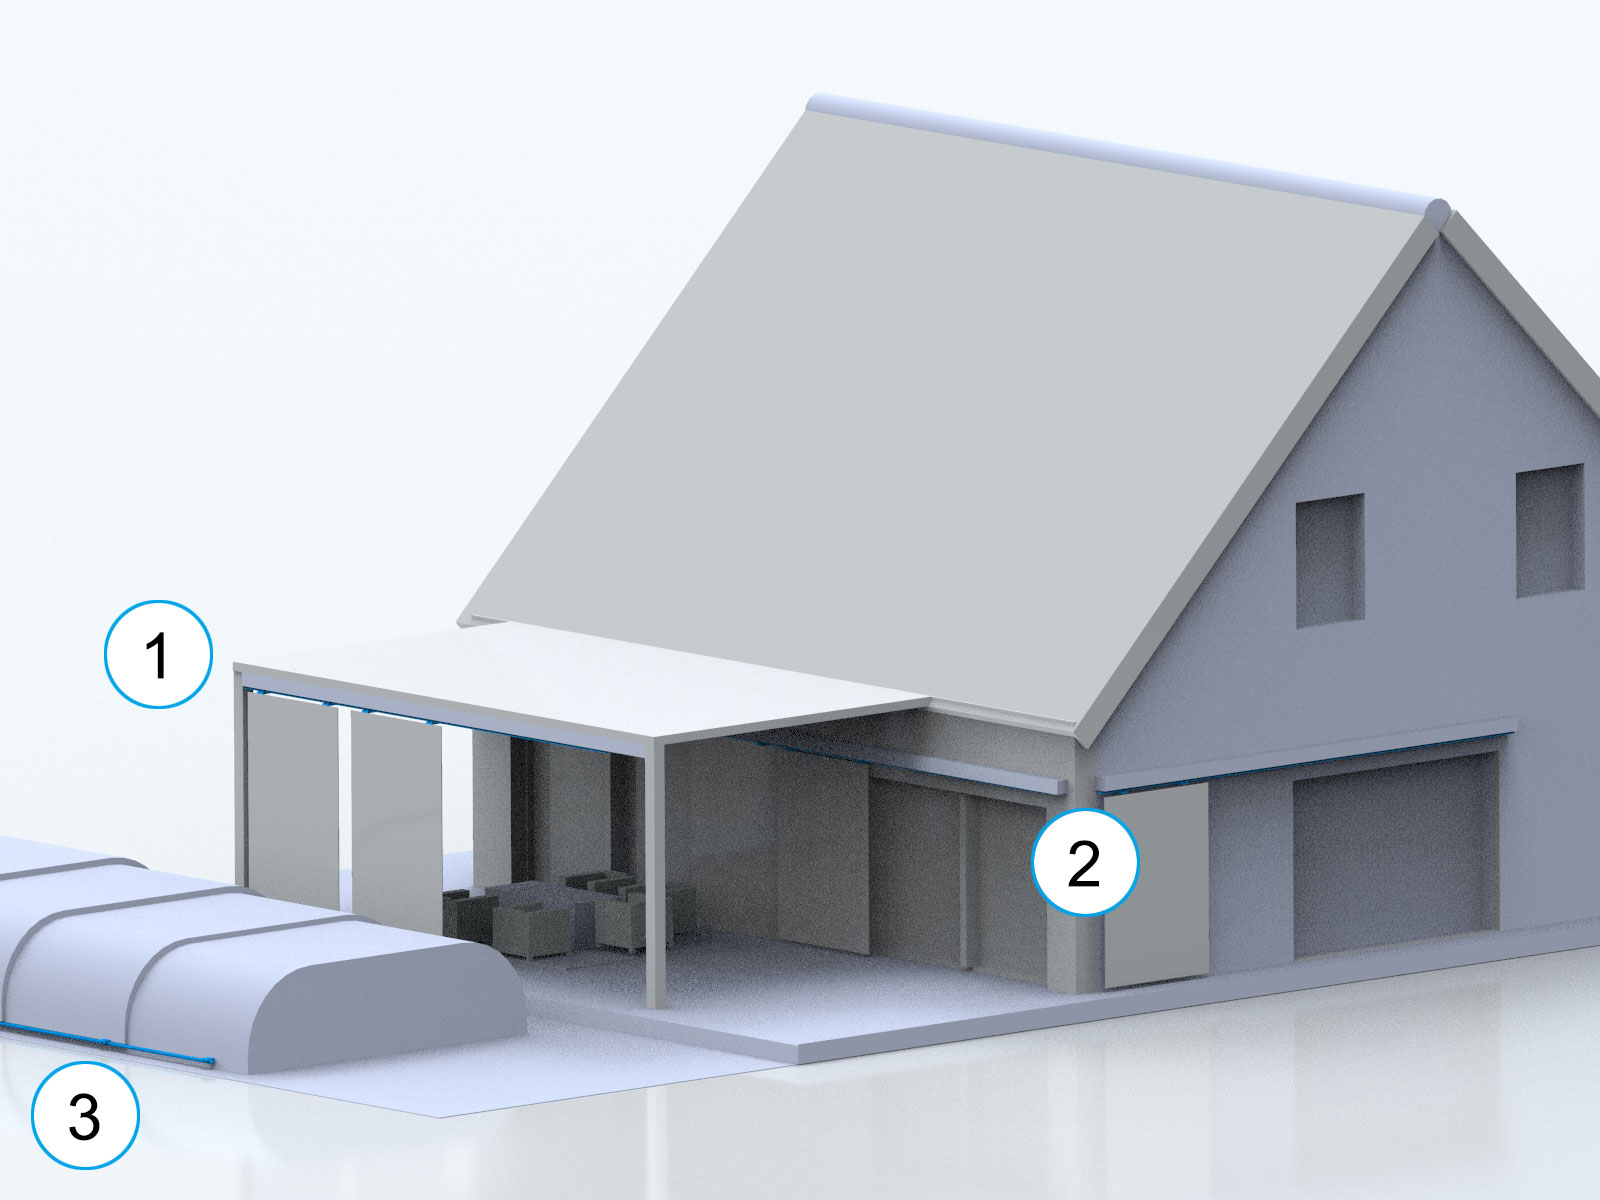 Außenansicht eines Wohngebäudes mit verschiedenen Einsatzmöglichkeiten für Lineartechnik.